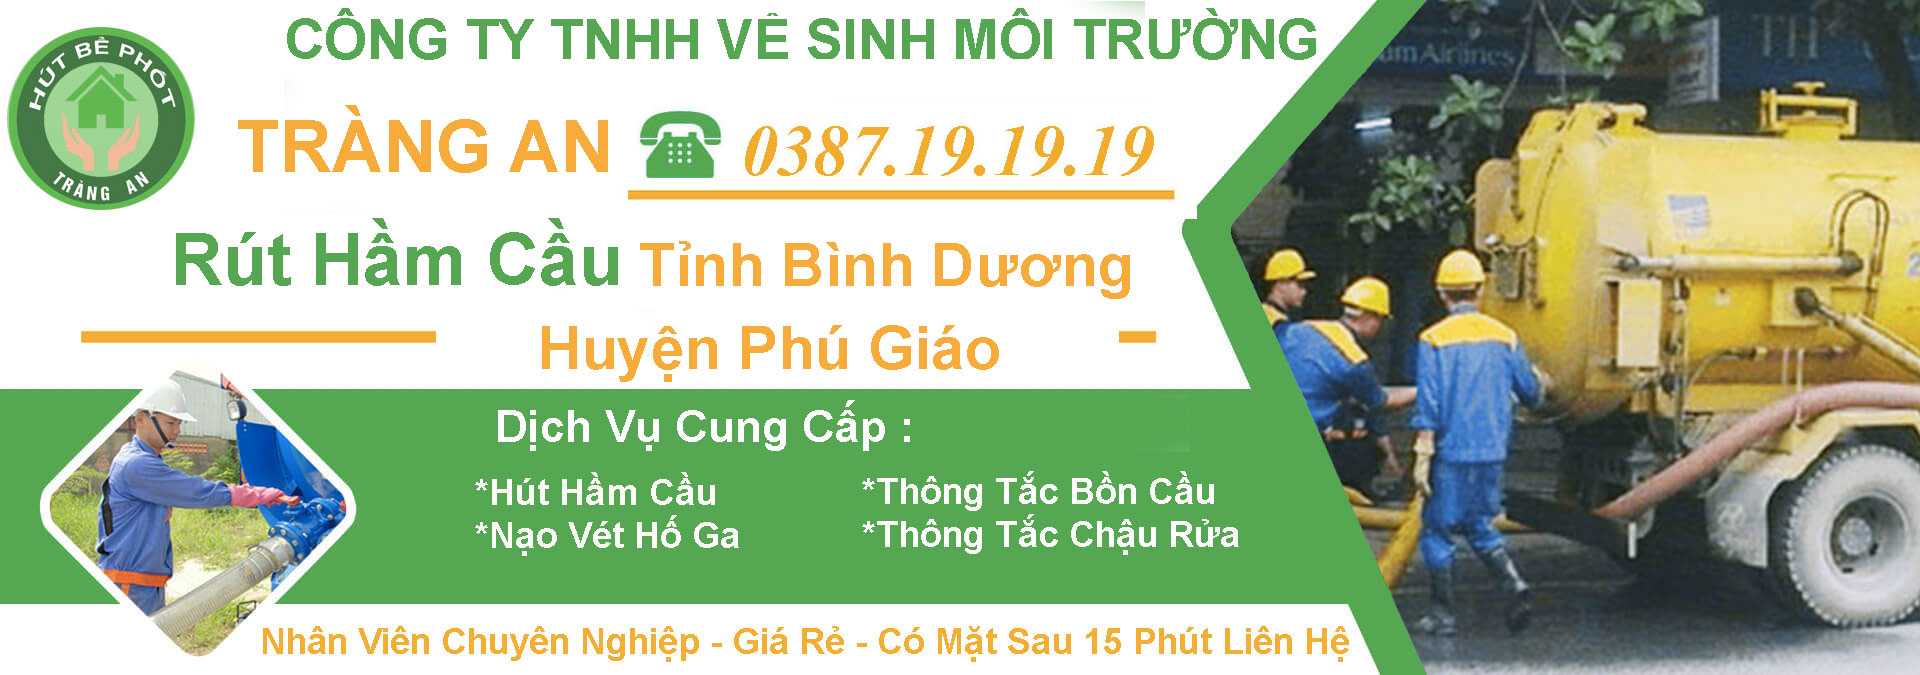 Hut Ham Cau Tinh Binh Duong Huyen Phu Giao